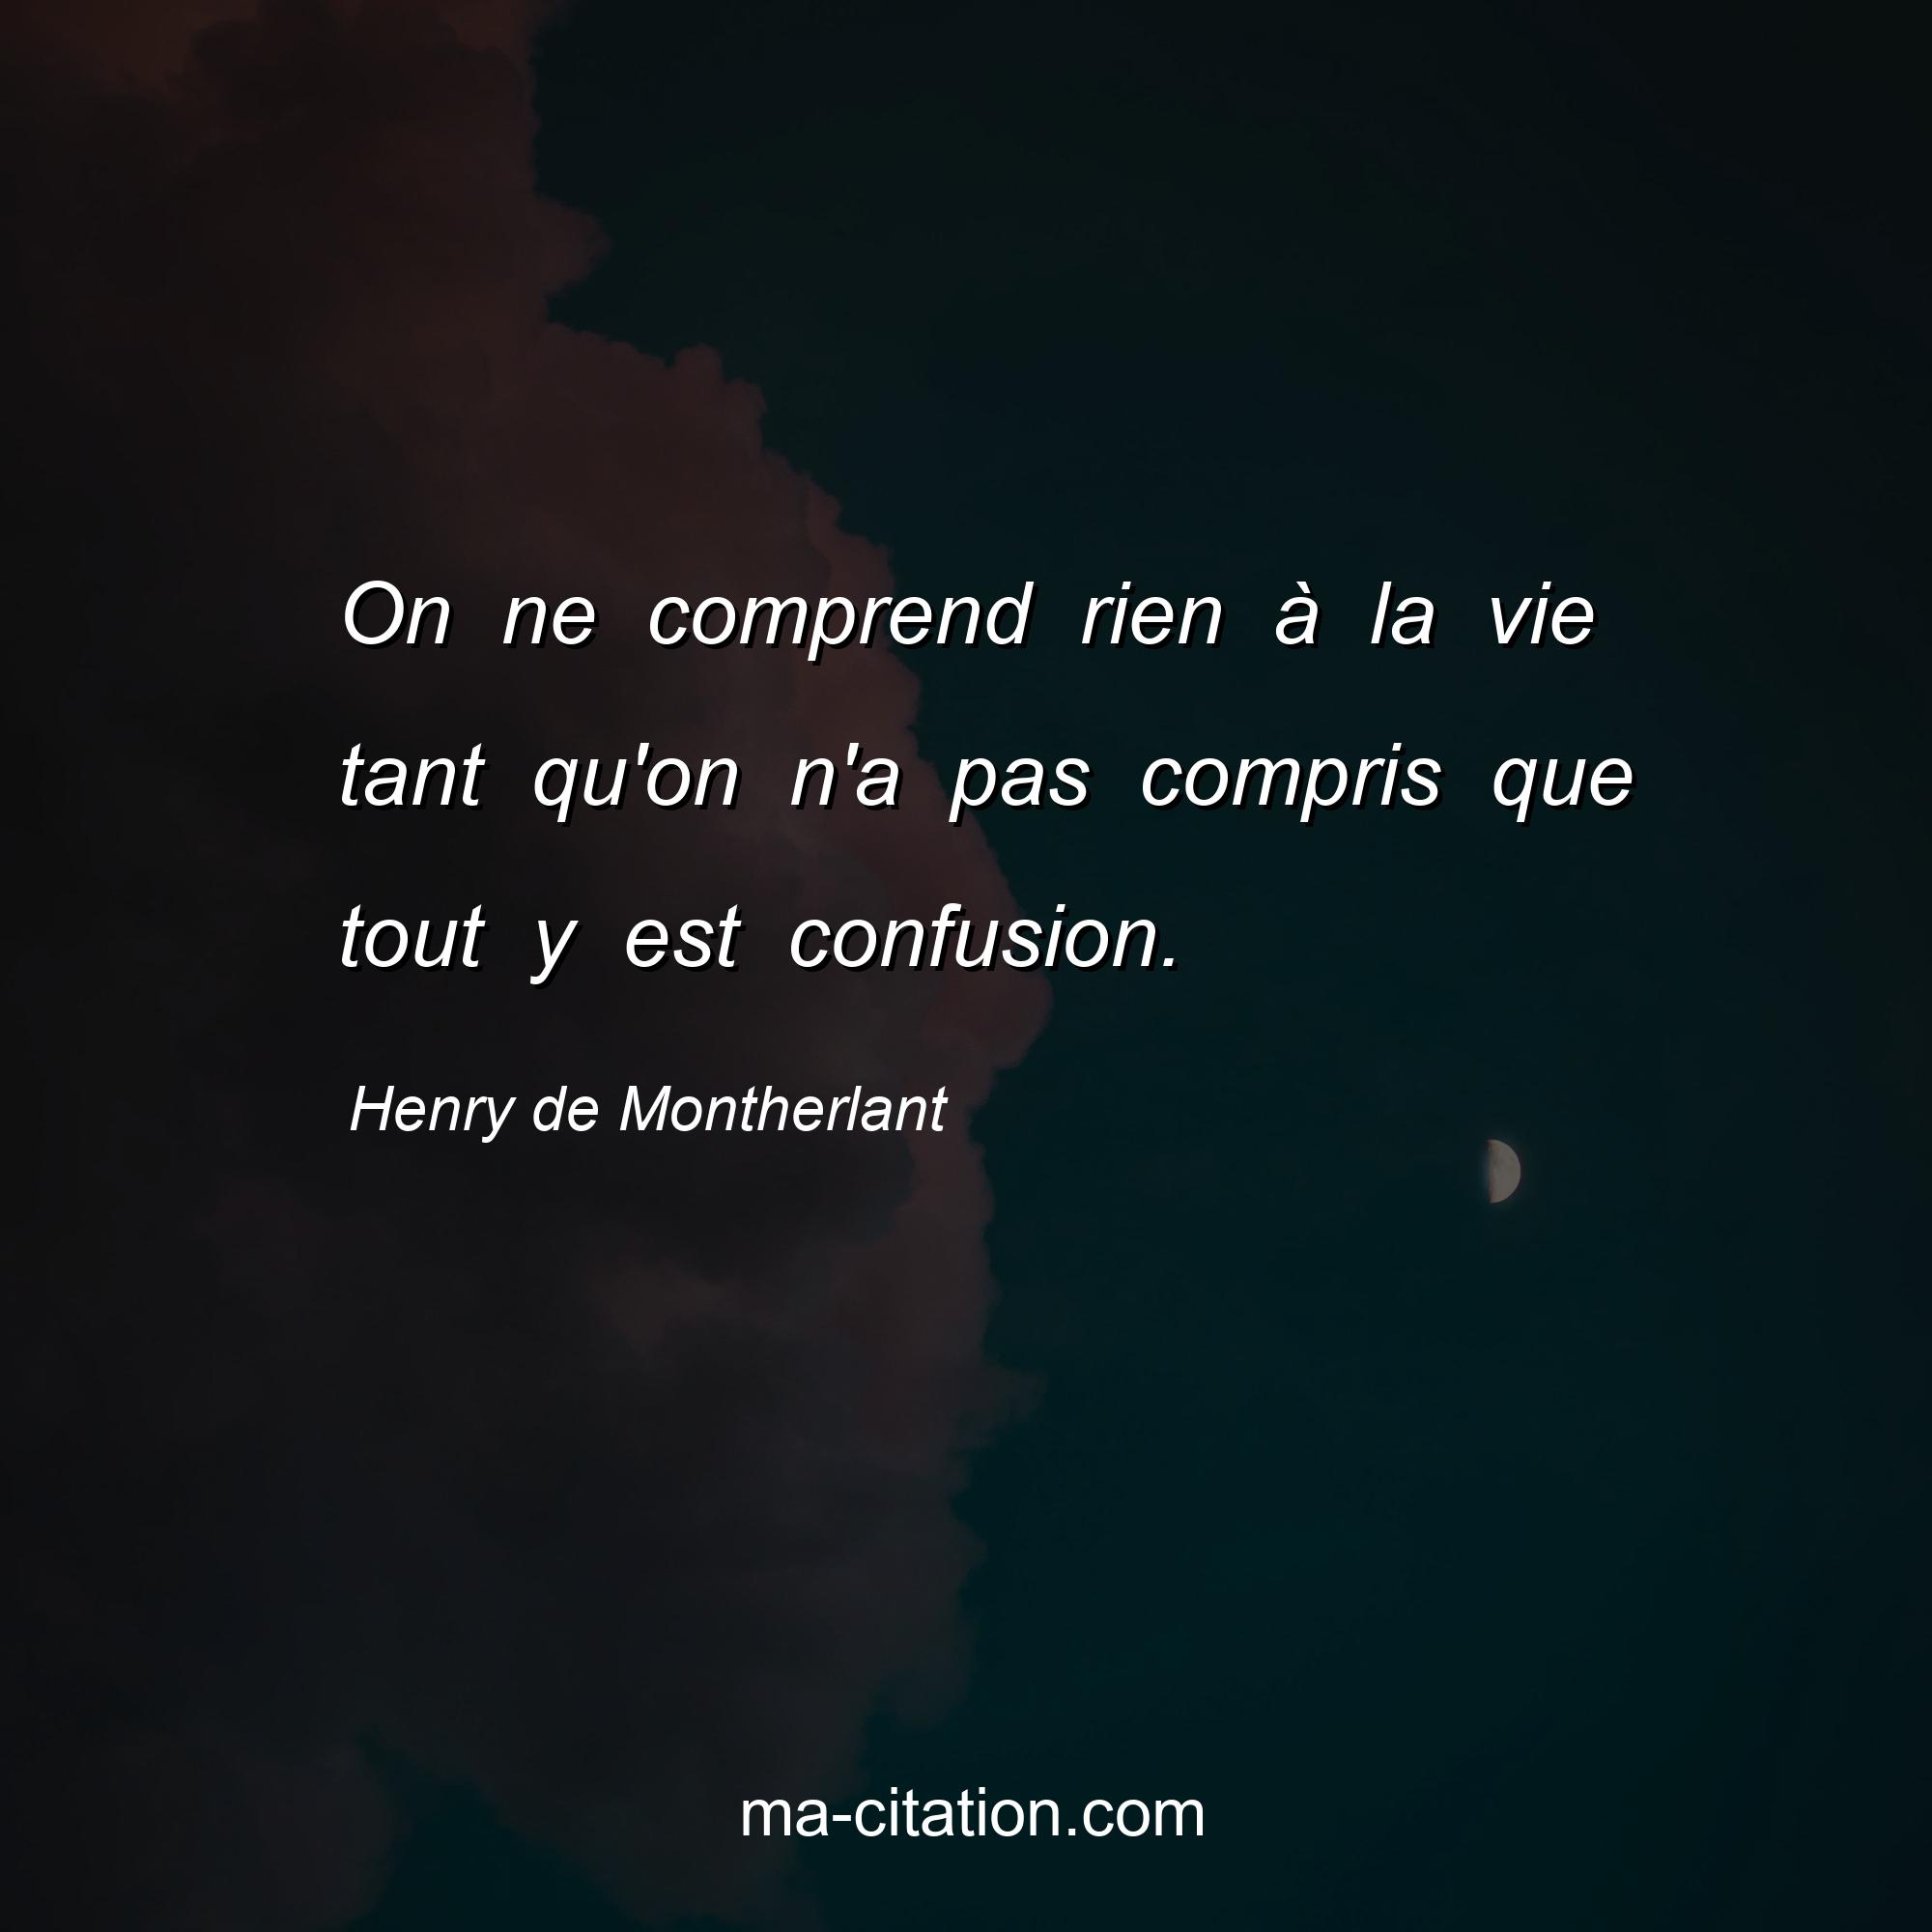 Henry de Montherlant : On ne comprend rien à la vie tant qu'on n'a pas compris que tout y est confusion.